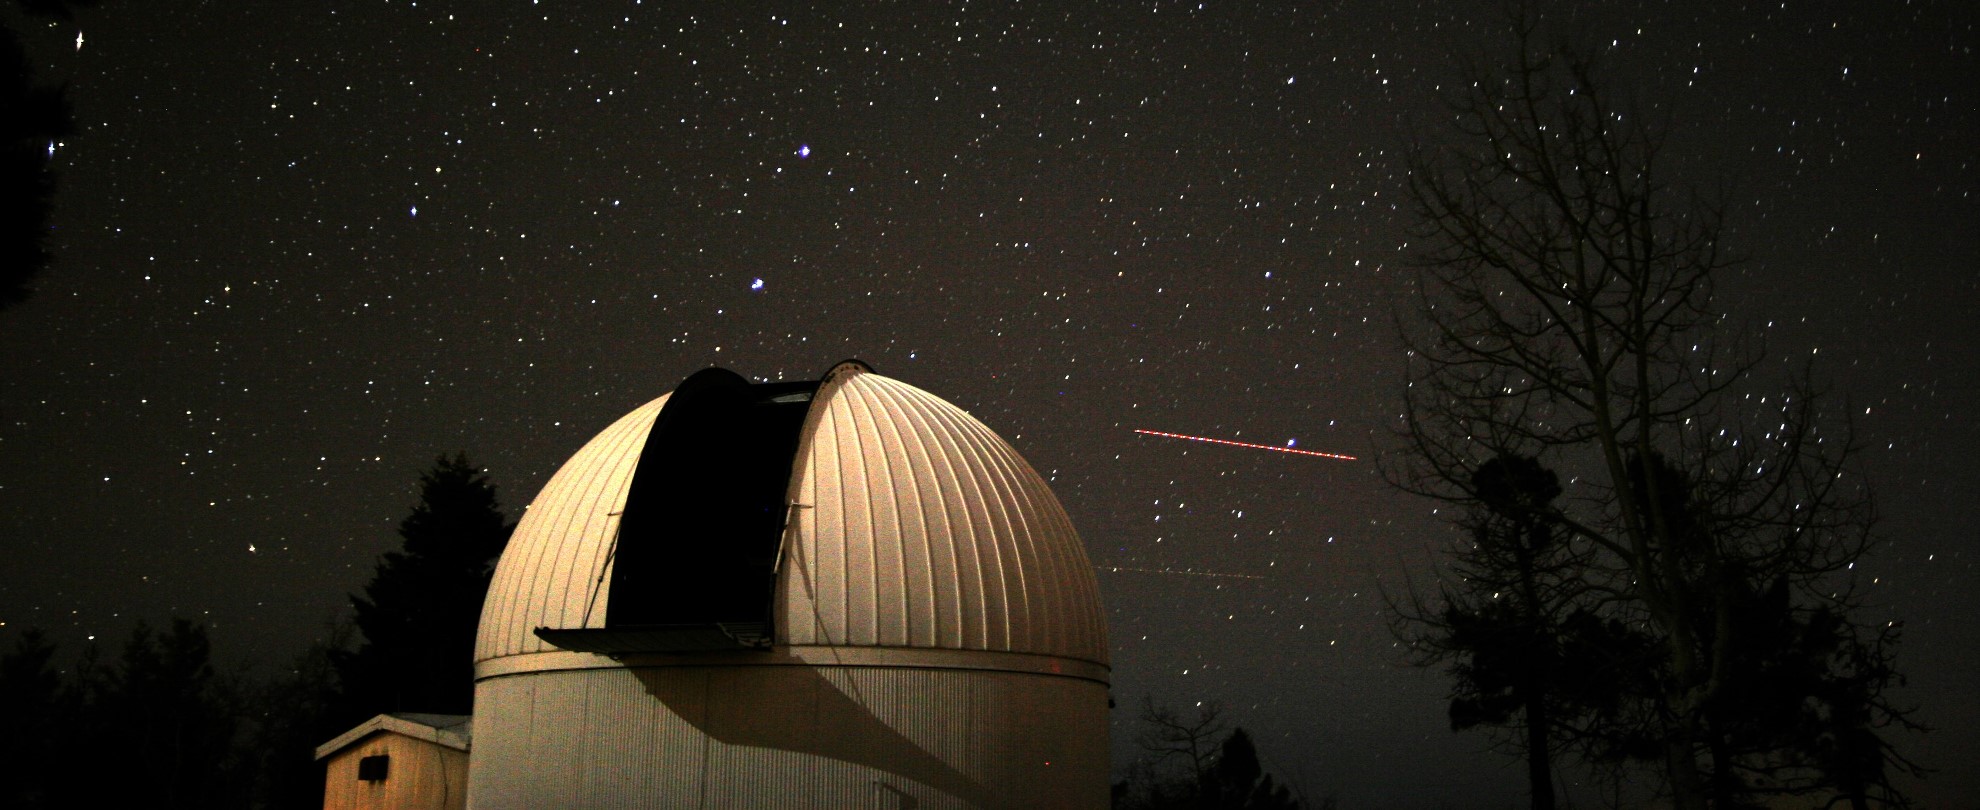 Catalina Sky Survey 60-inch telescope